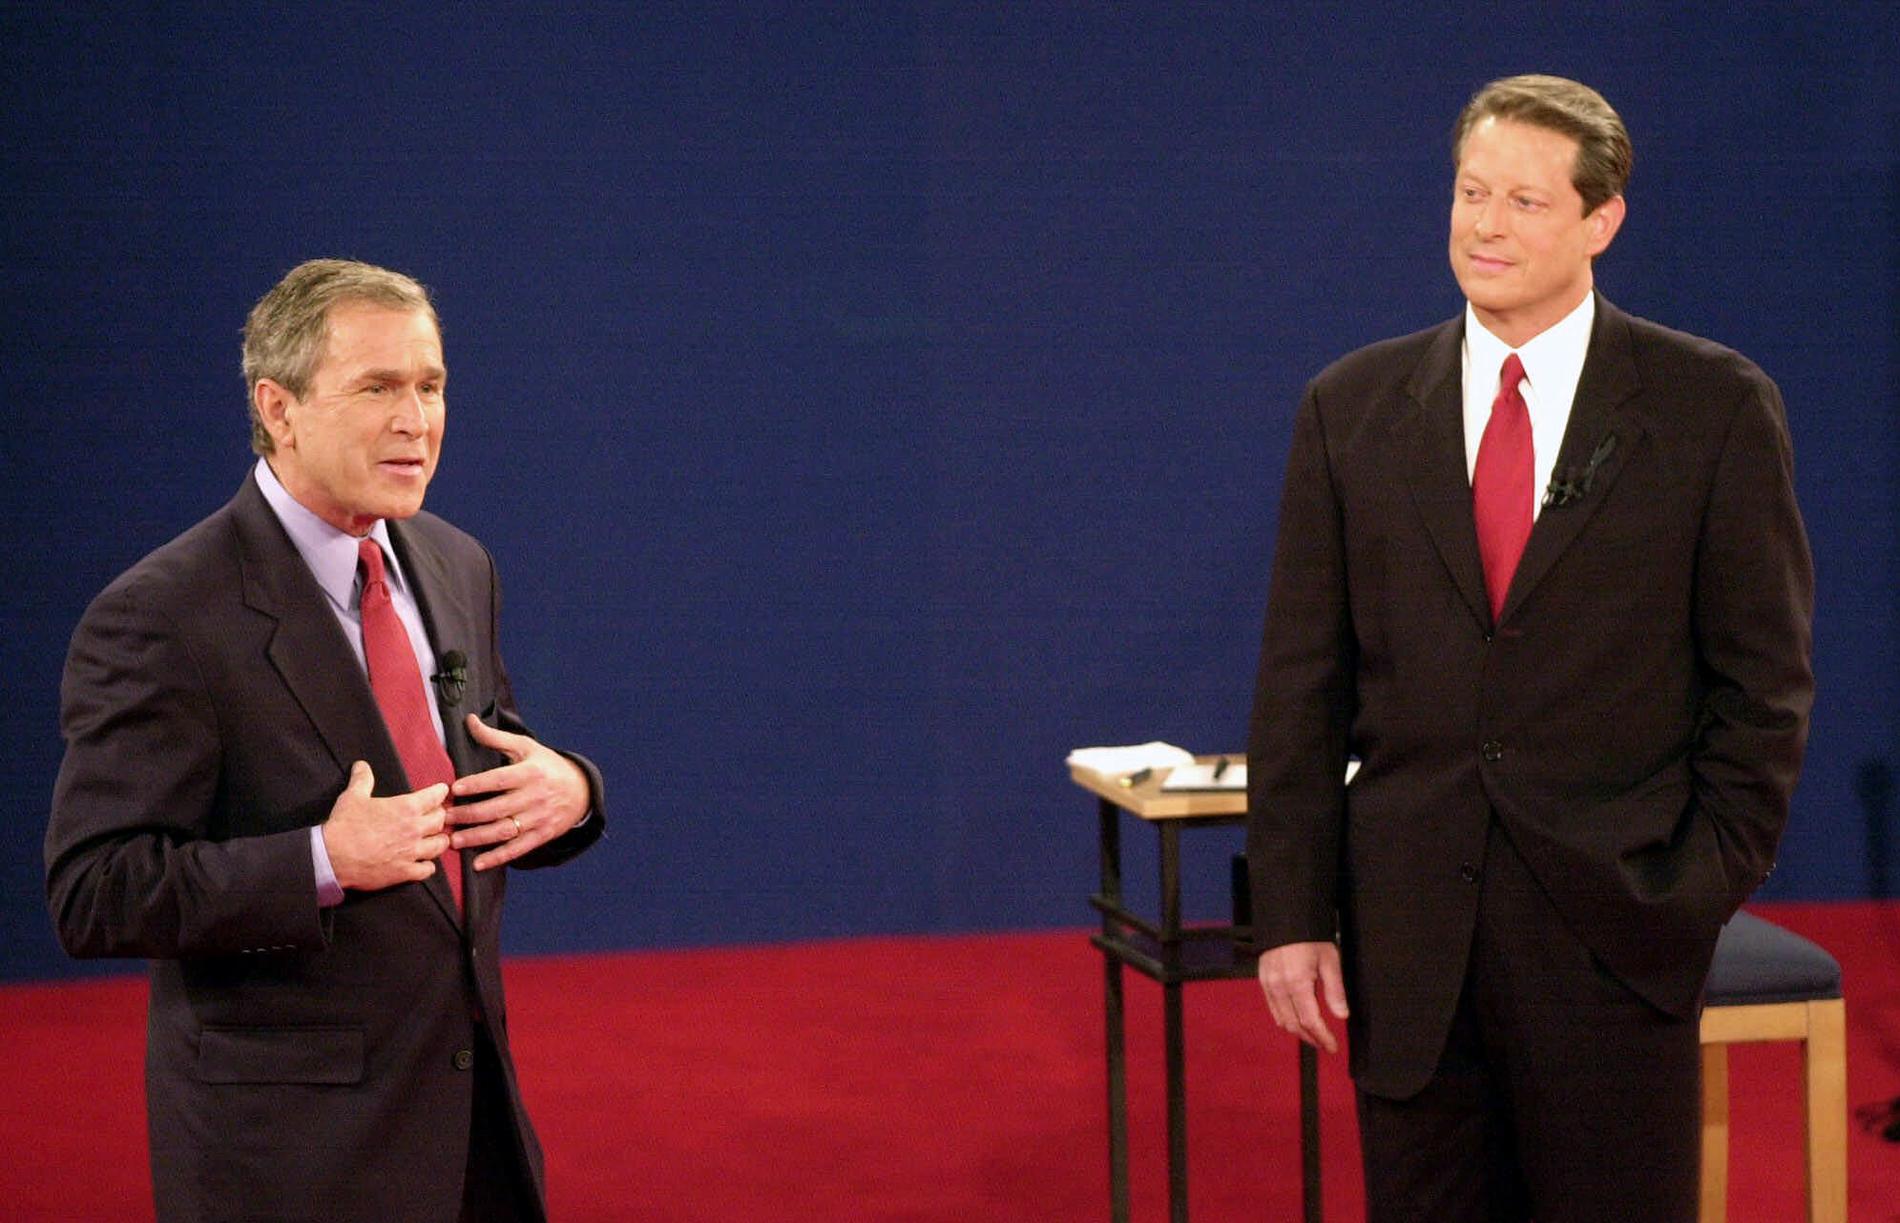 Presidentvalet 2000 är ett av de mest kontroversiella i USA:s historia. George W Bush blev president efter att frågan avgjorts i Högsta domstolen. 